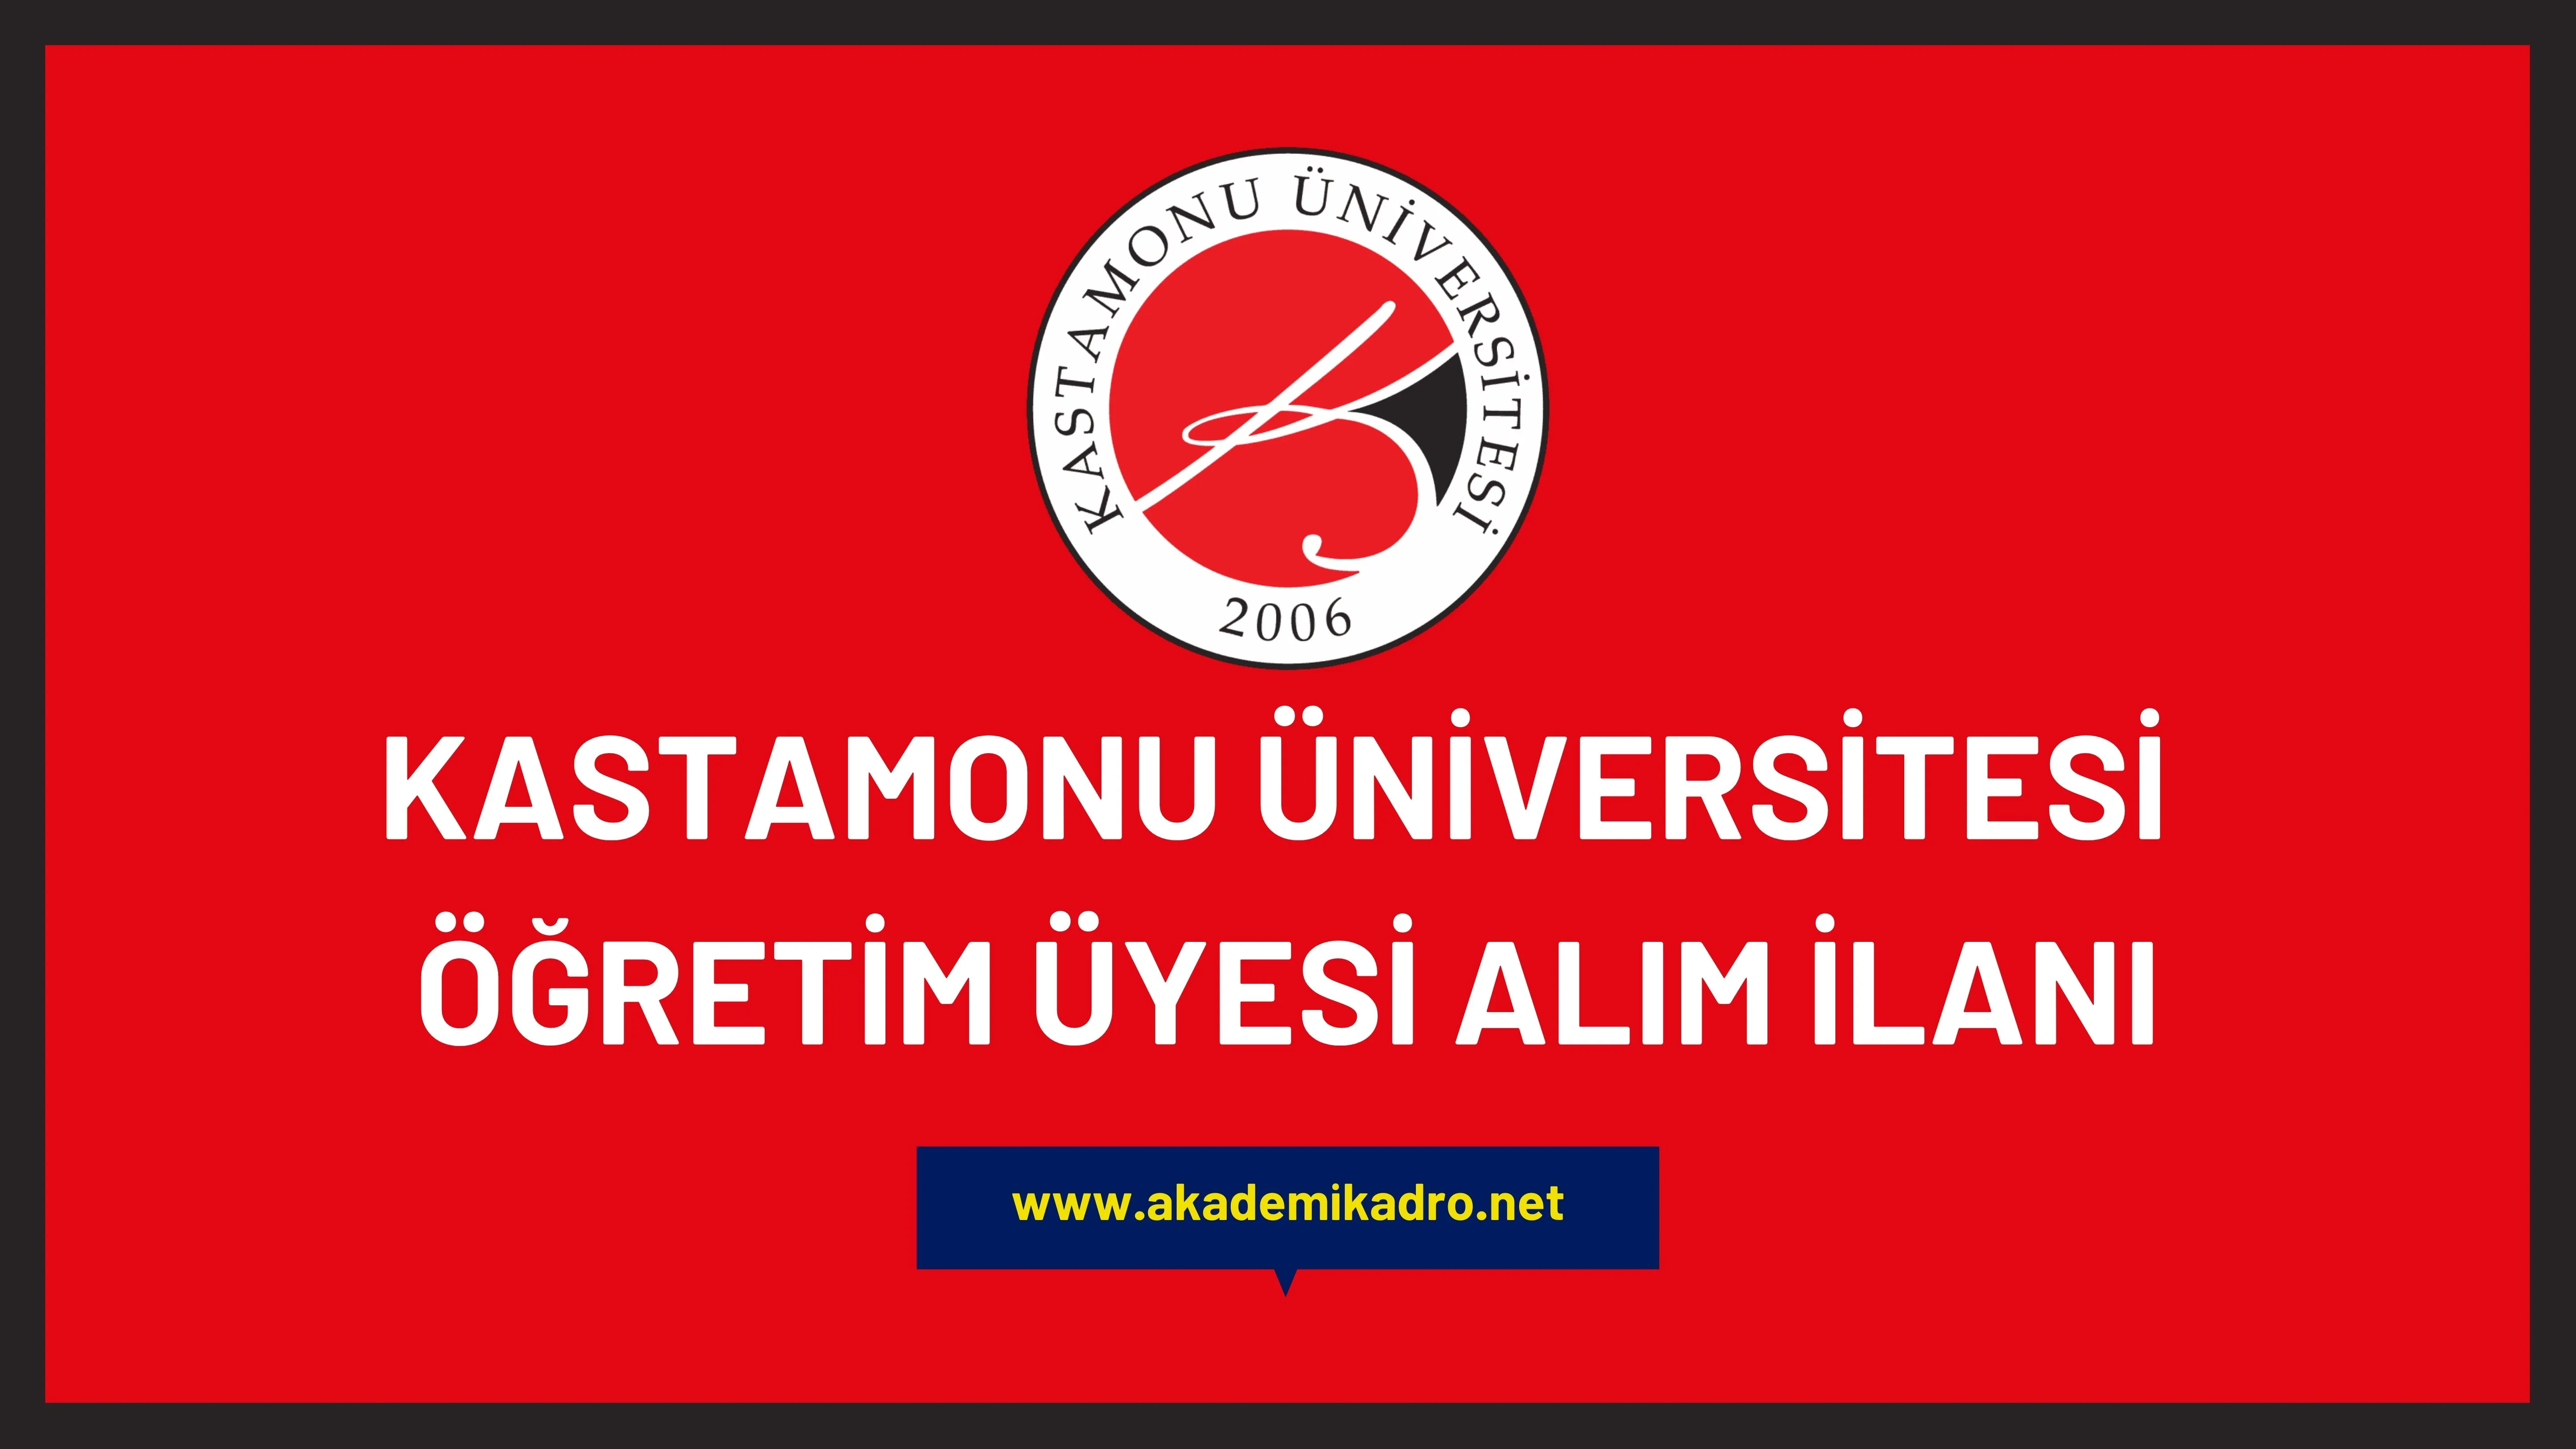 Kastamonu Üniversitesi birçok alandan 55 öğretim üyesi alacak.